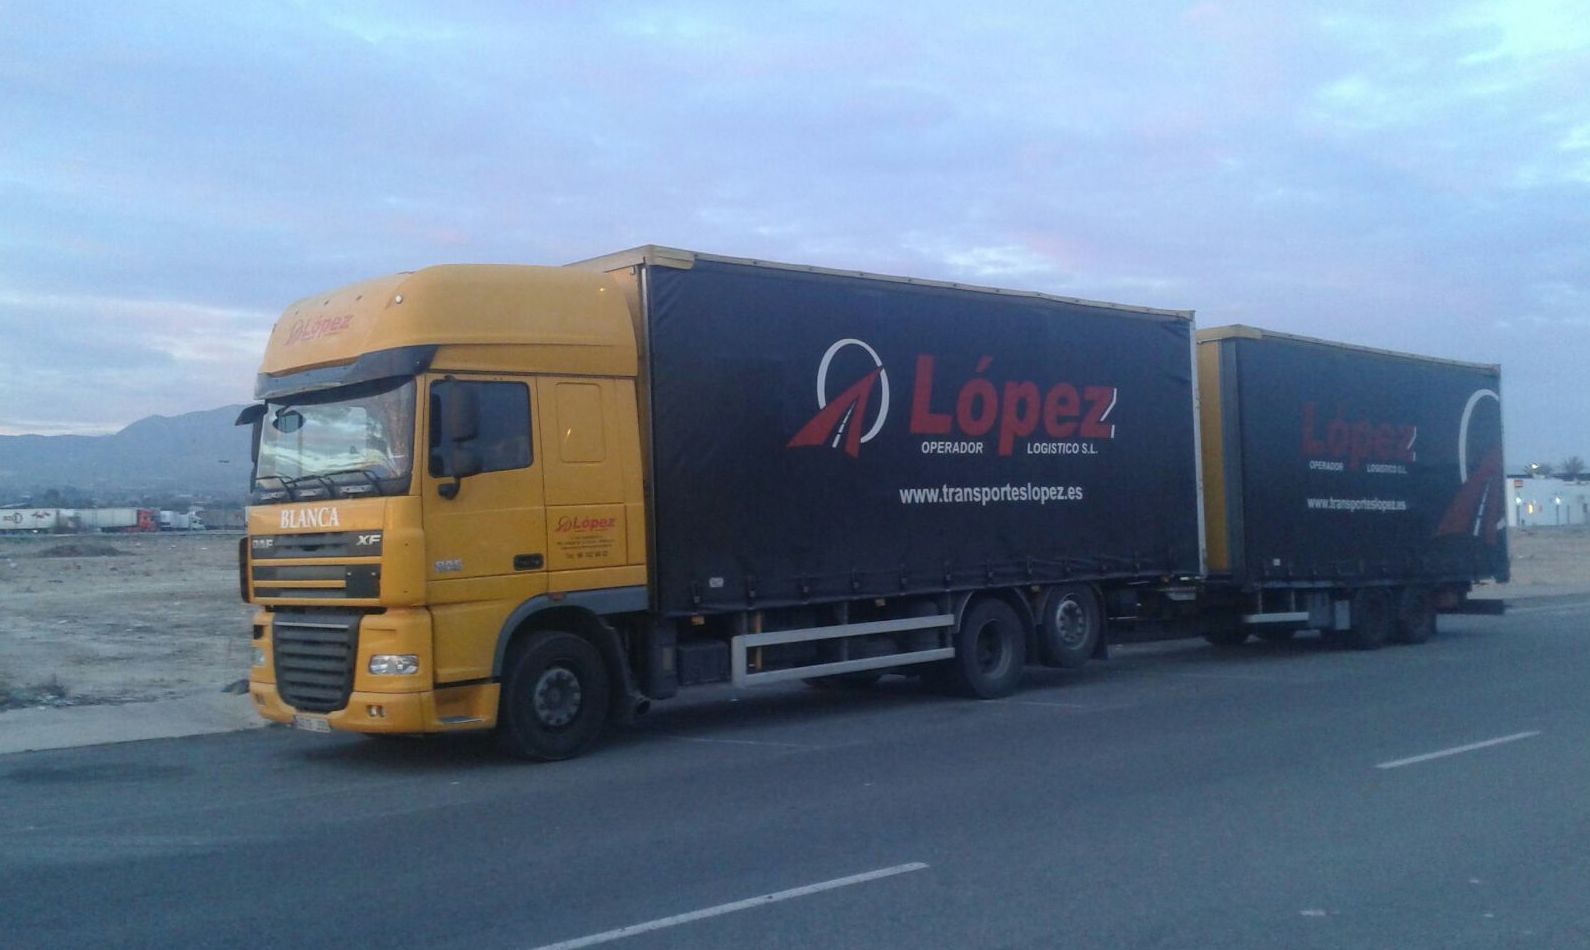 Foto 12 de Transportes de mercancía por grupaje o cargas completas en  | OPERADOR LOGÍSTICO LÓPEZ S.L